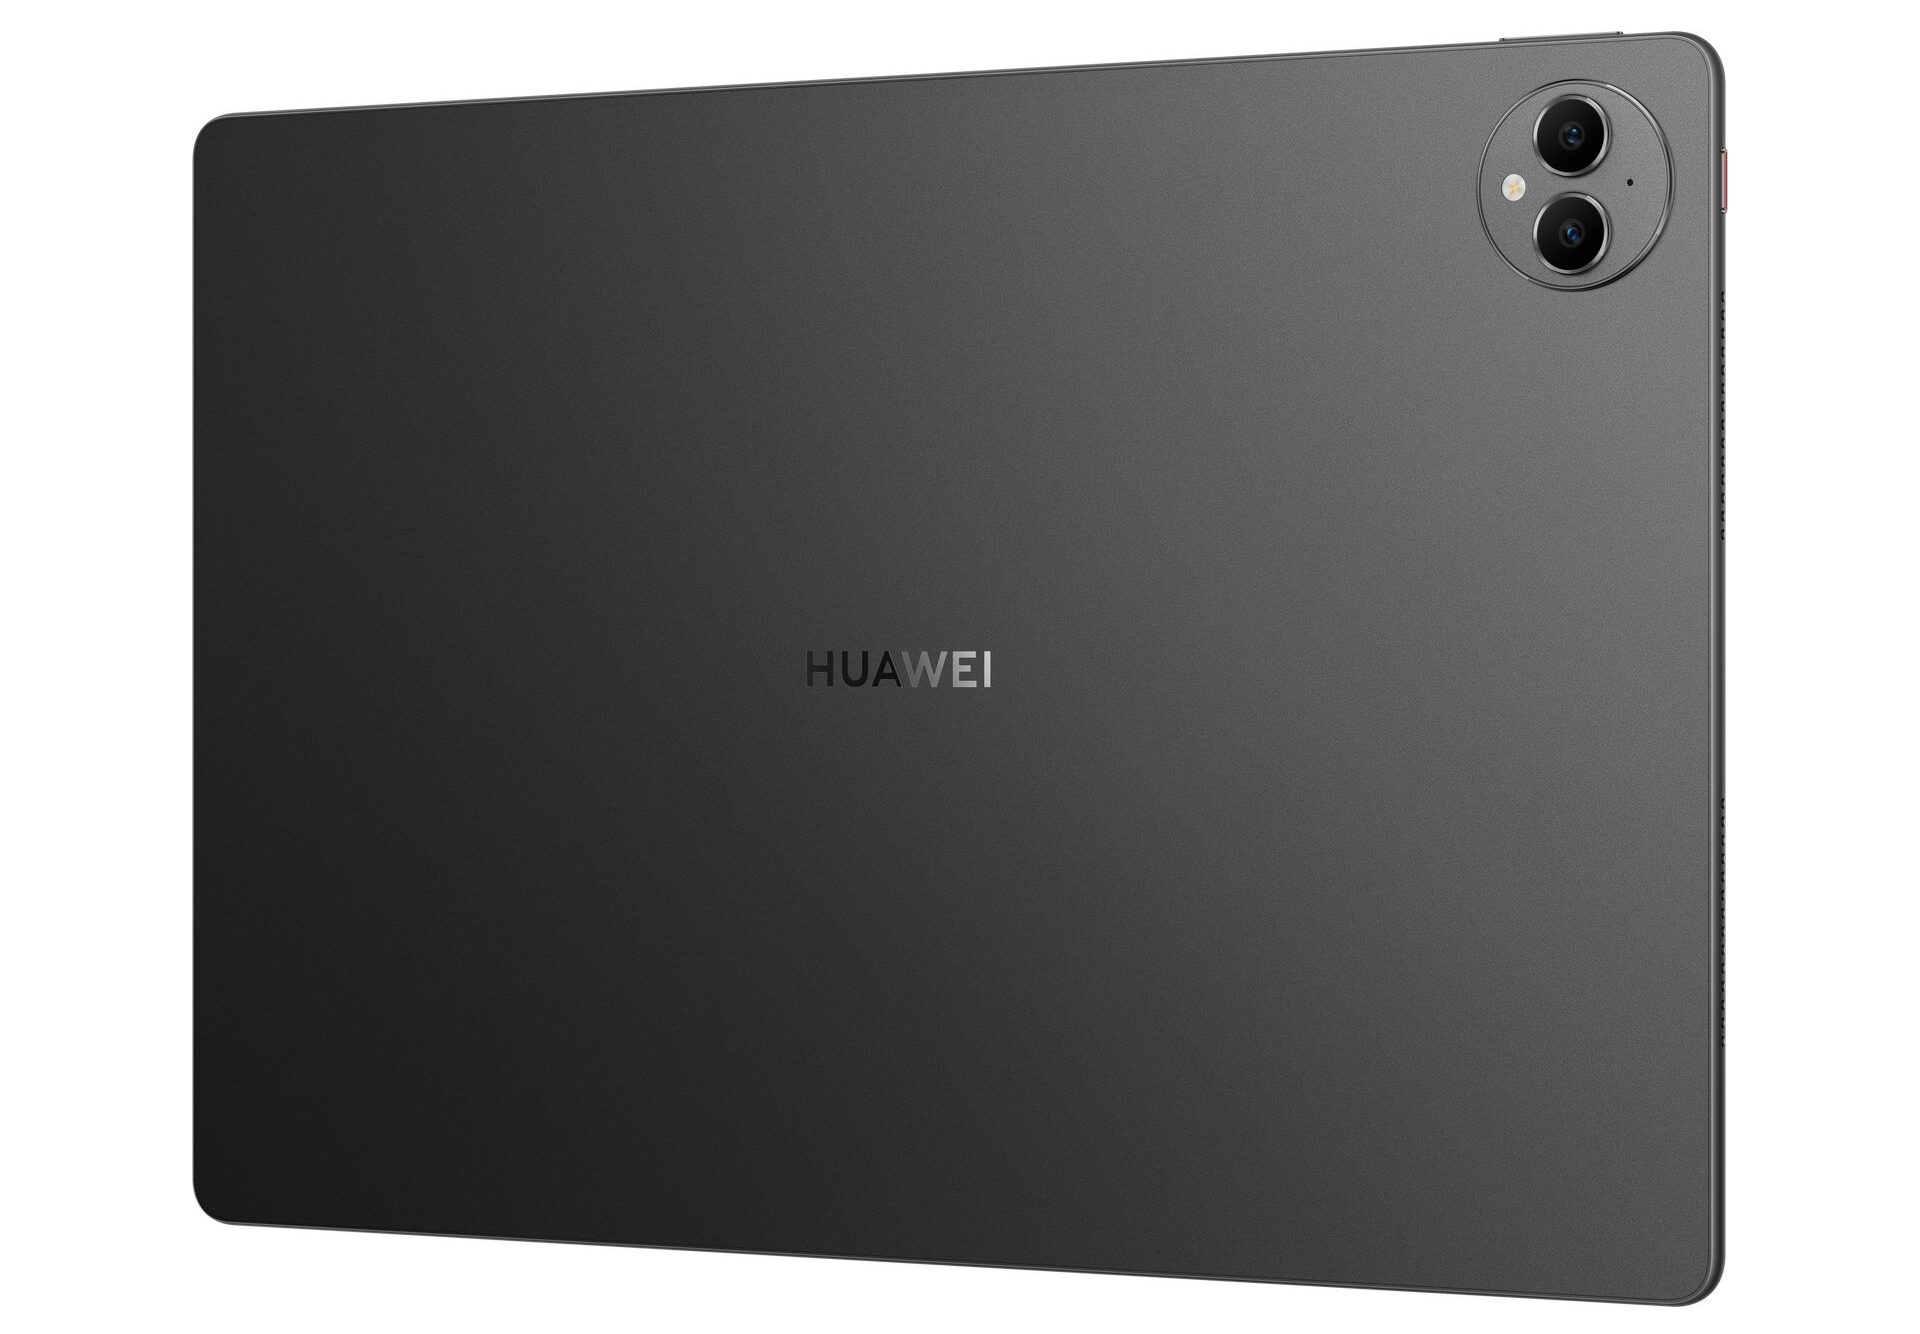 HUAWEI MatePad Pro 13.2 inçlik tableti ön satışa sunuldu